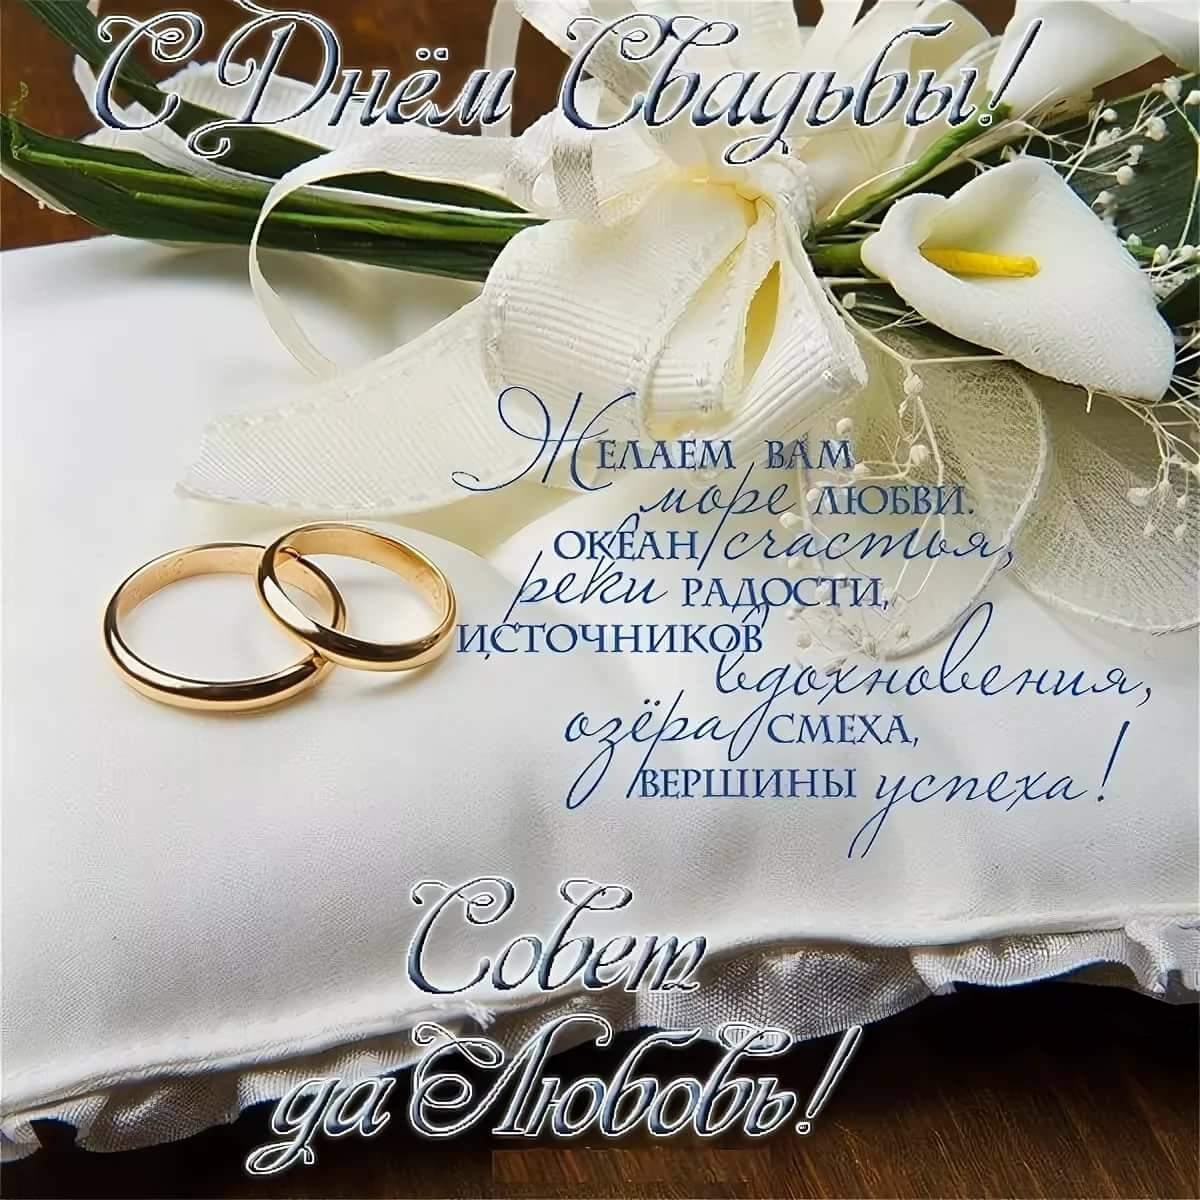 Поздравления с днем свадьбы в прозе: поздравления на свадьбу своими словами до слез